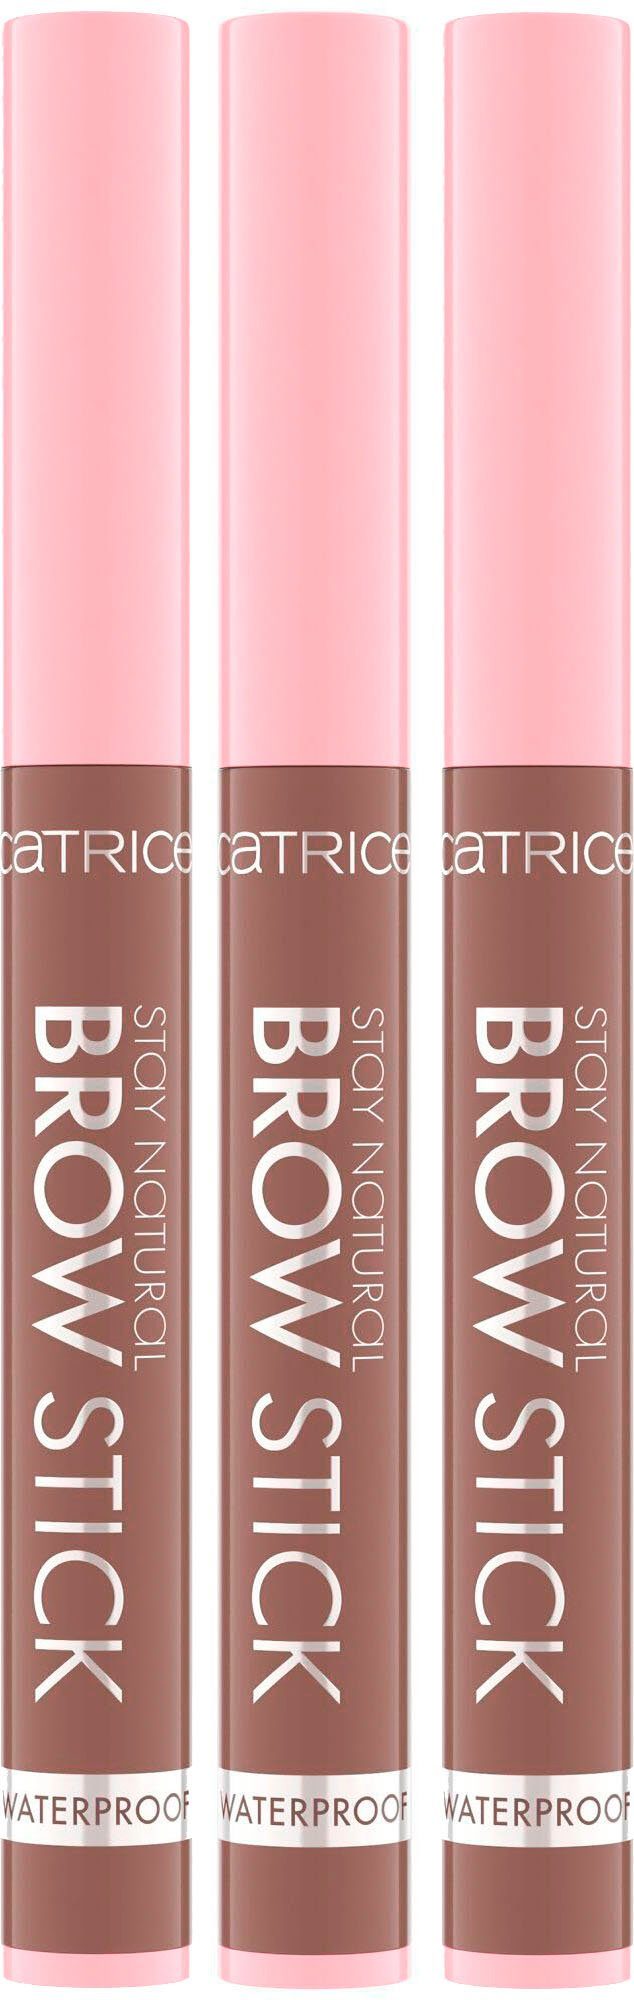 Catrice Augenbrauen-Stift Stay Natural Brow Stick Soft Dark Brown | Augenbrauen-Make-Up